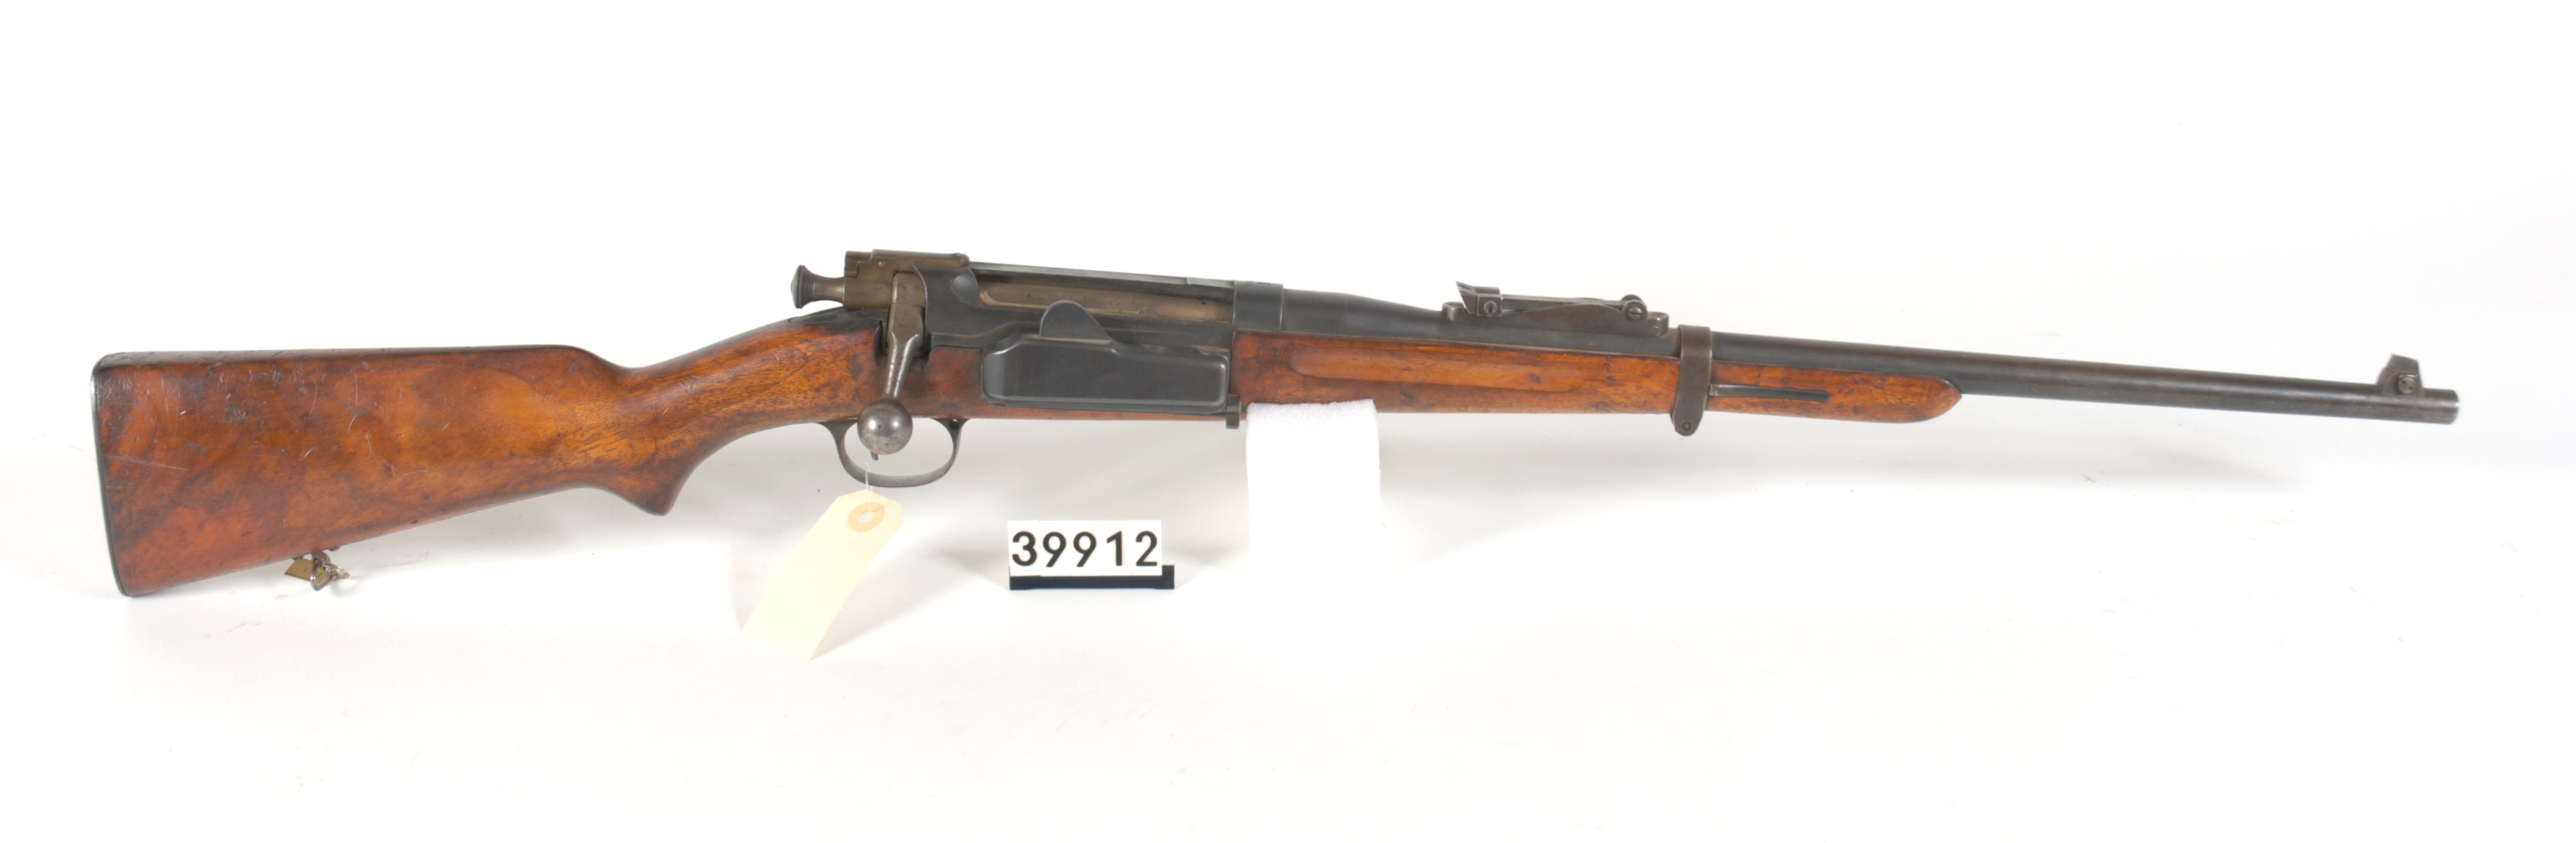 ./guns/rifle/bilder/Rifle-Kongsberg-Krag-M1906-FMU.039912.jpg